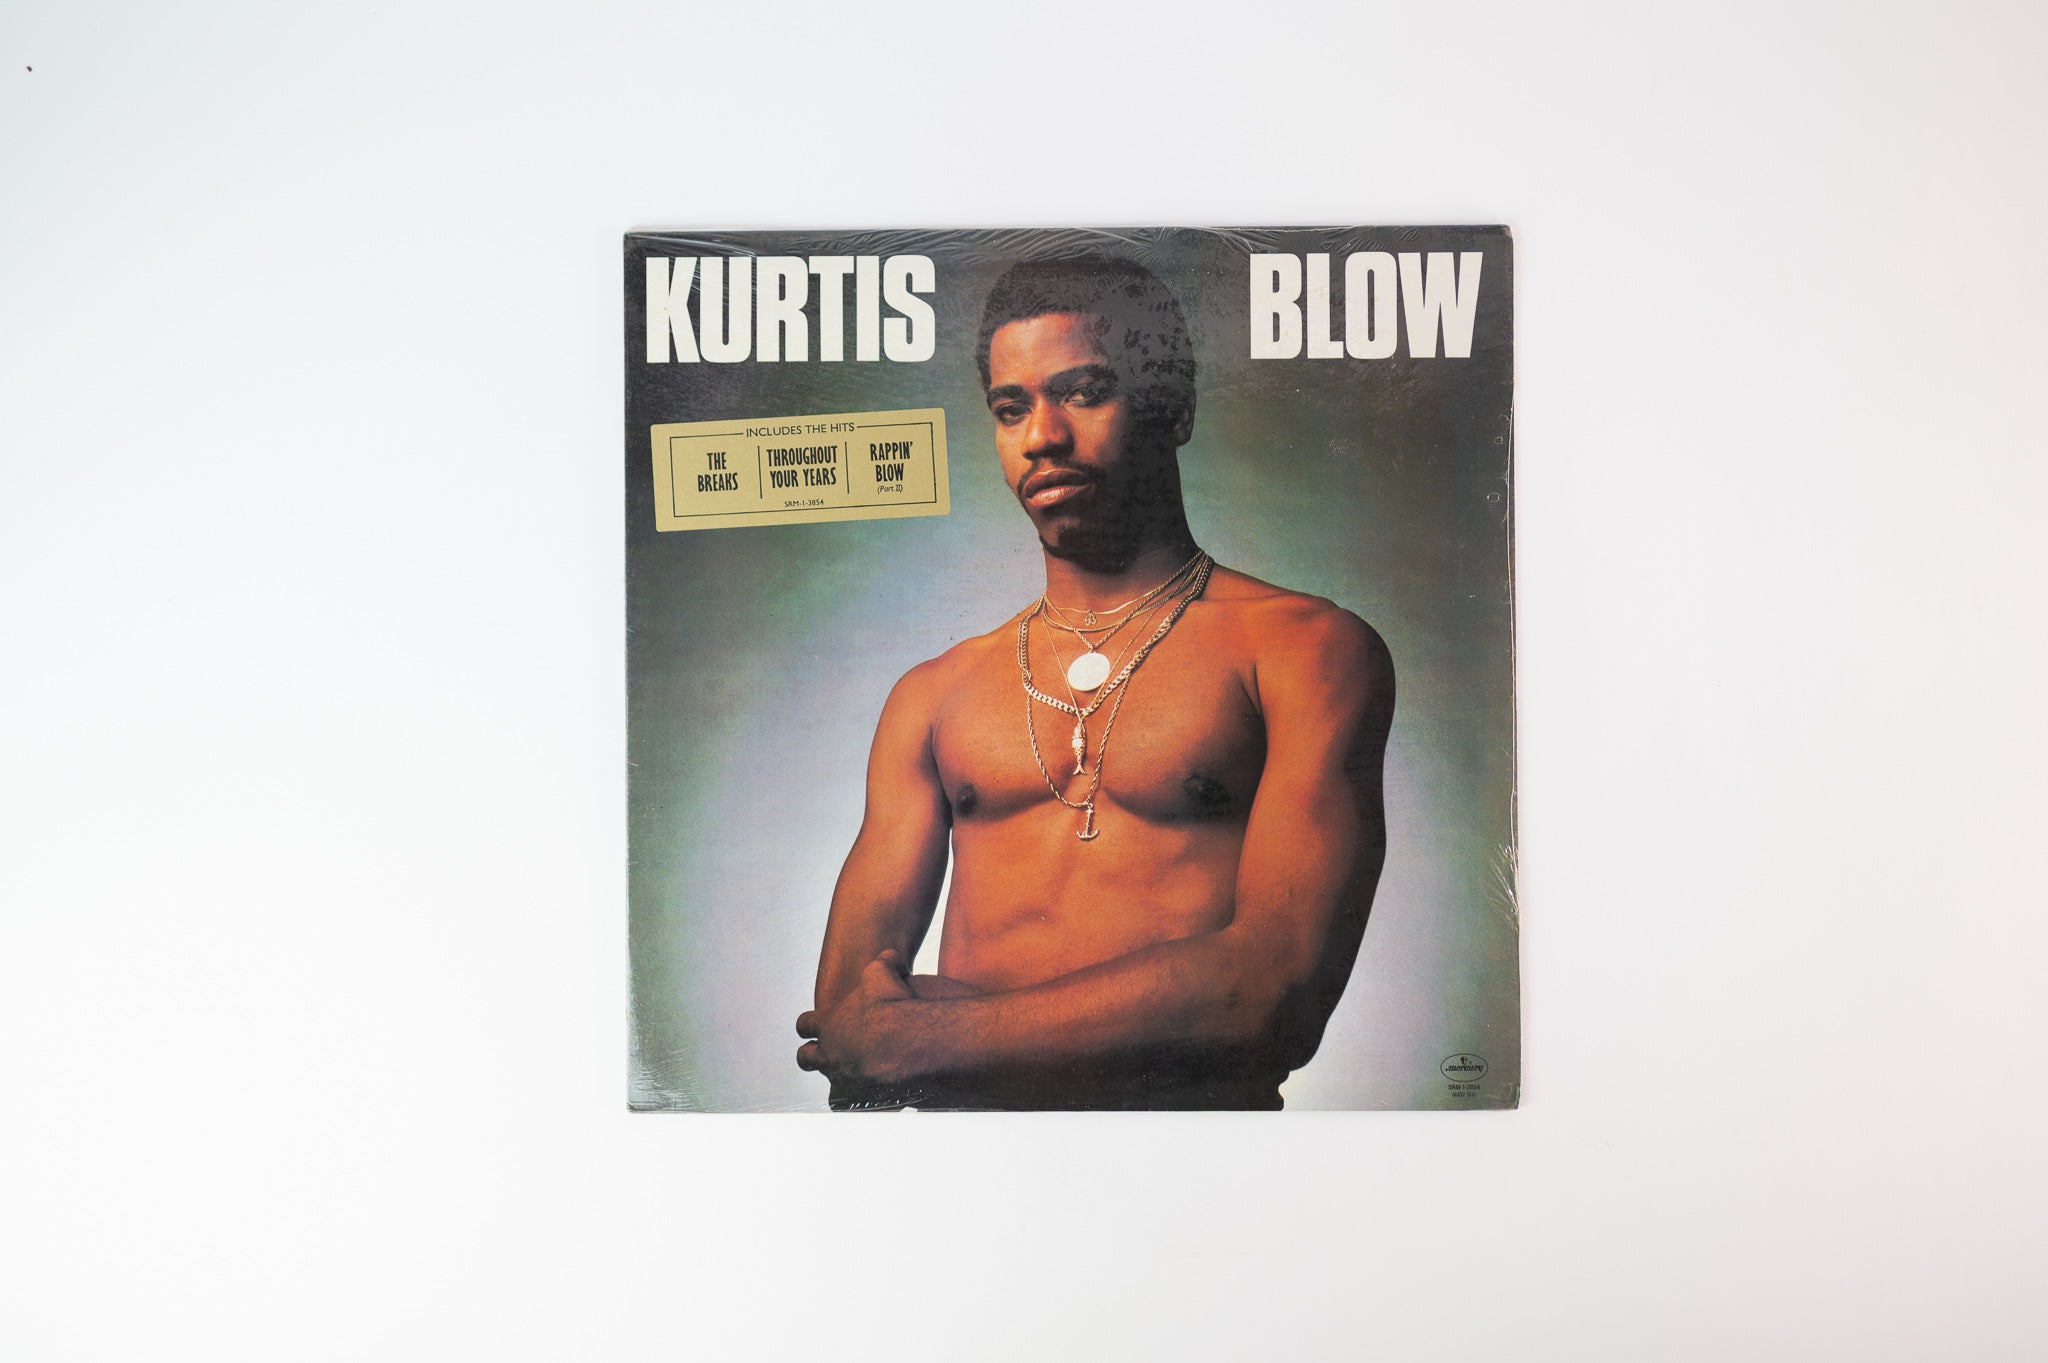 Kurtis Blow - Kurtis Blow S/T Self-Titled on Mercury - Sealed